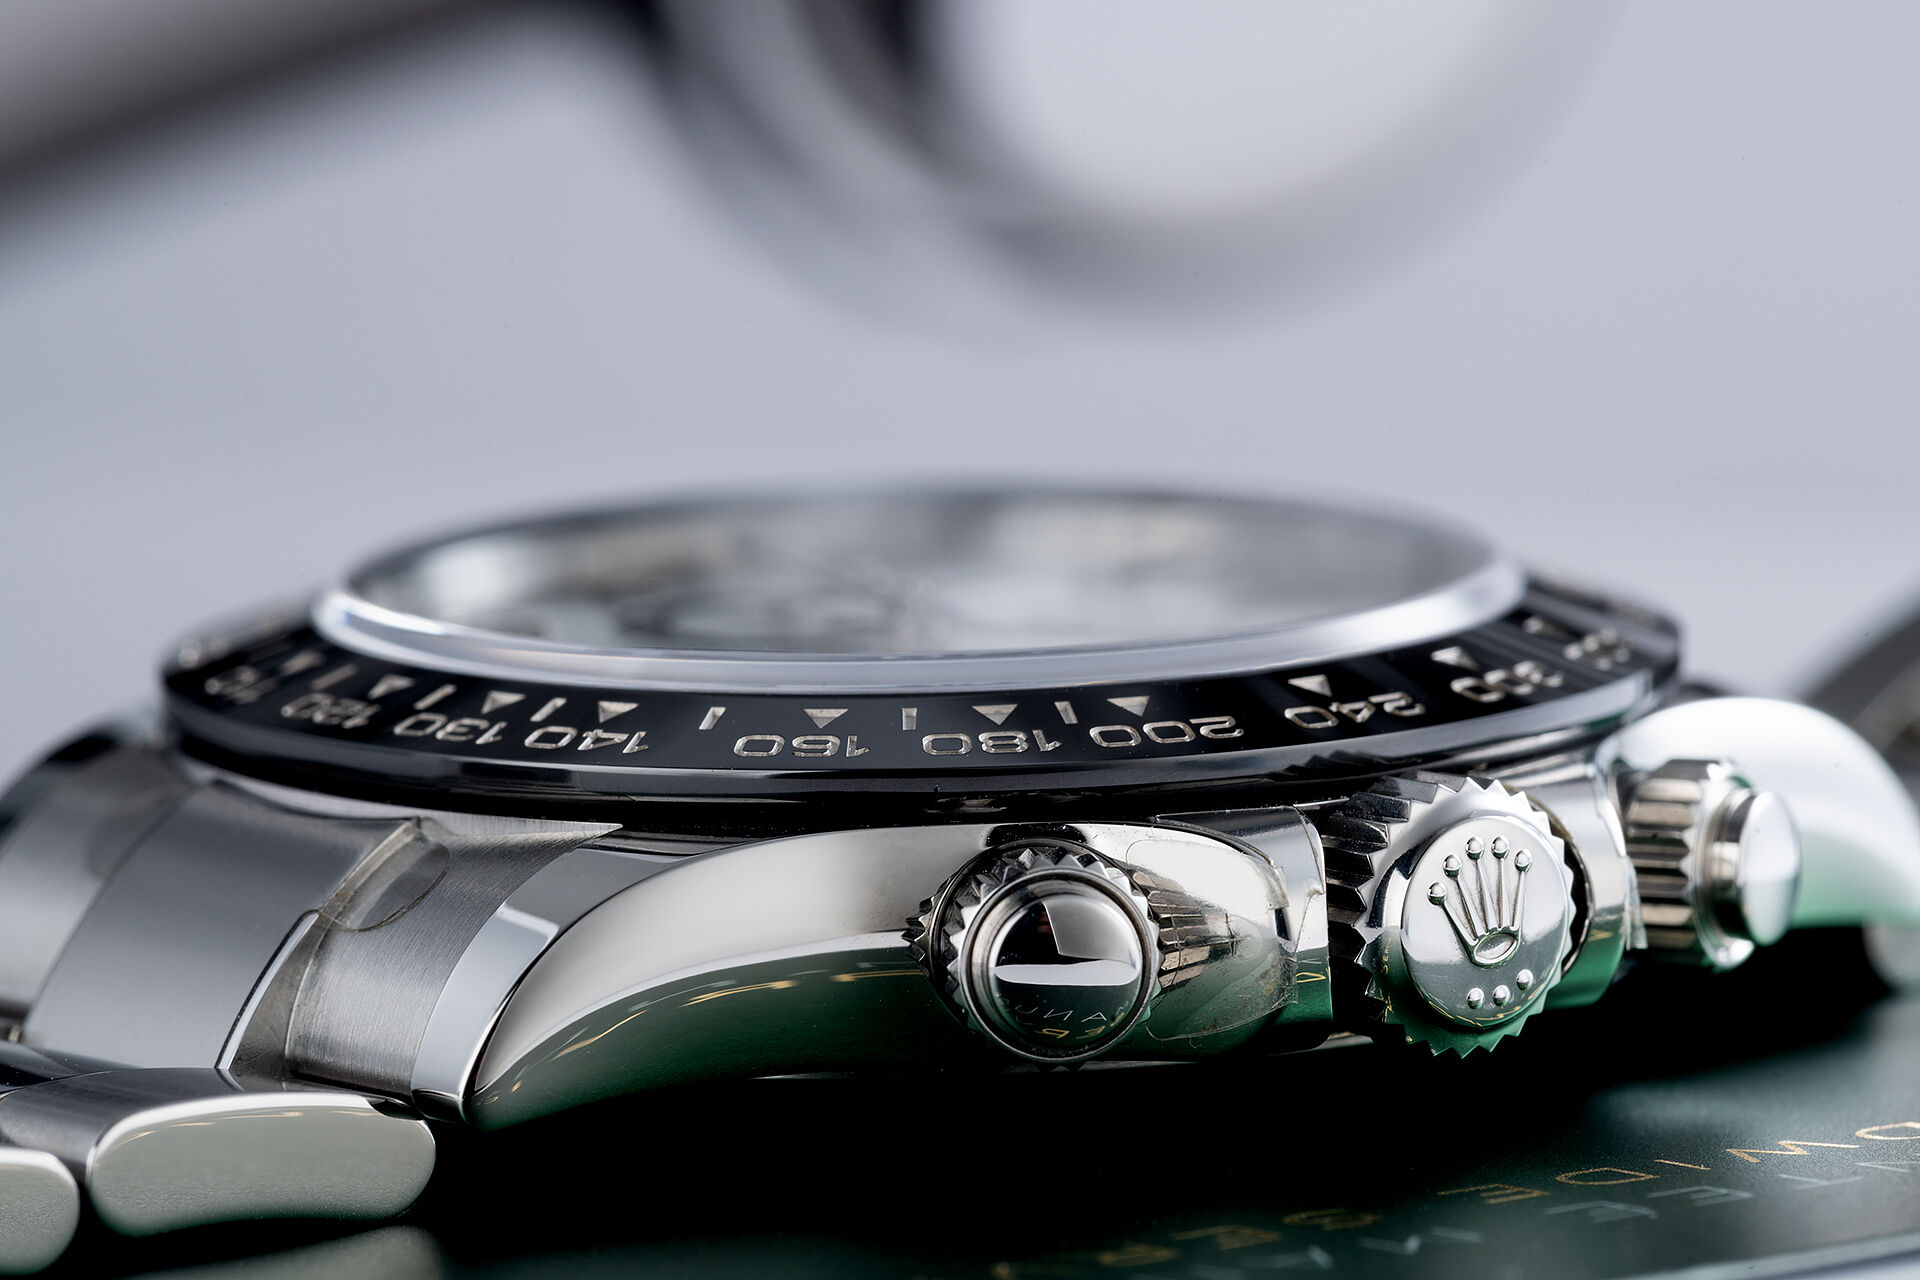 ref 116500LN | 'Cerachrom' Under Rolex Warranty | Rolex Cosmograph Daytona